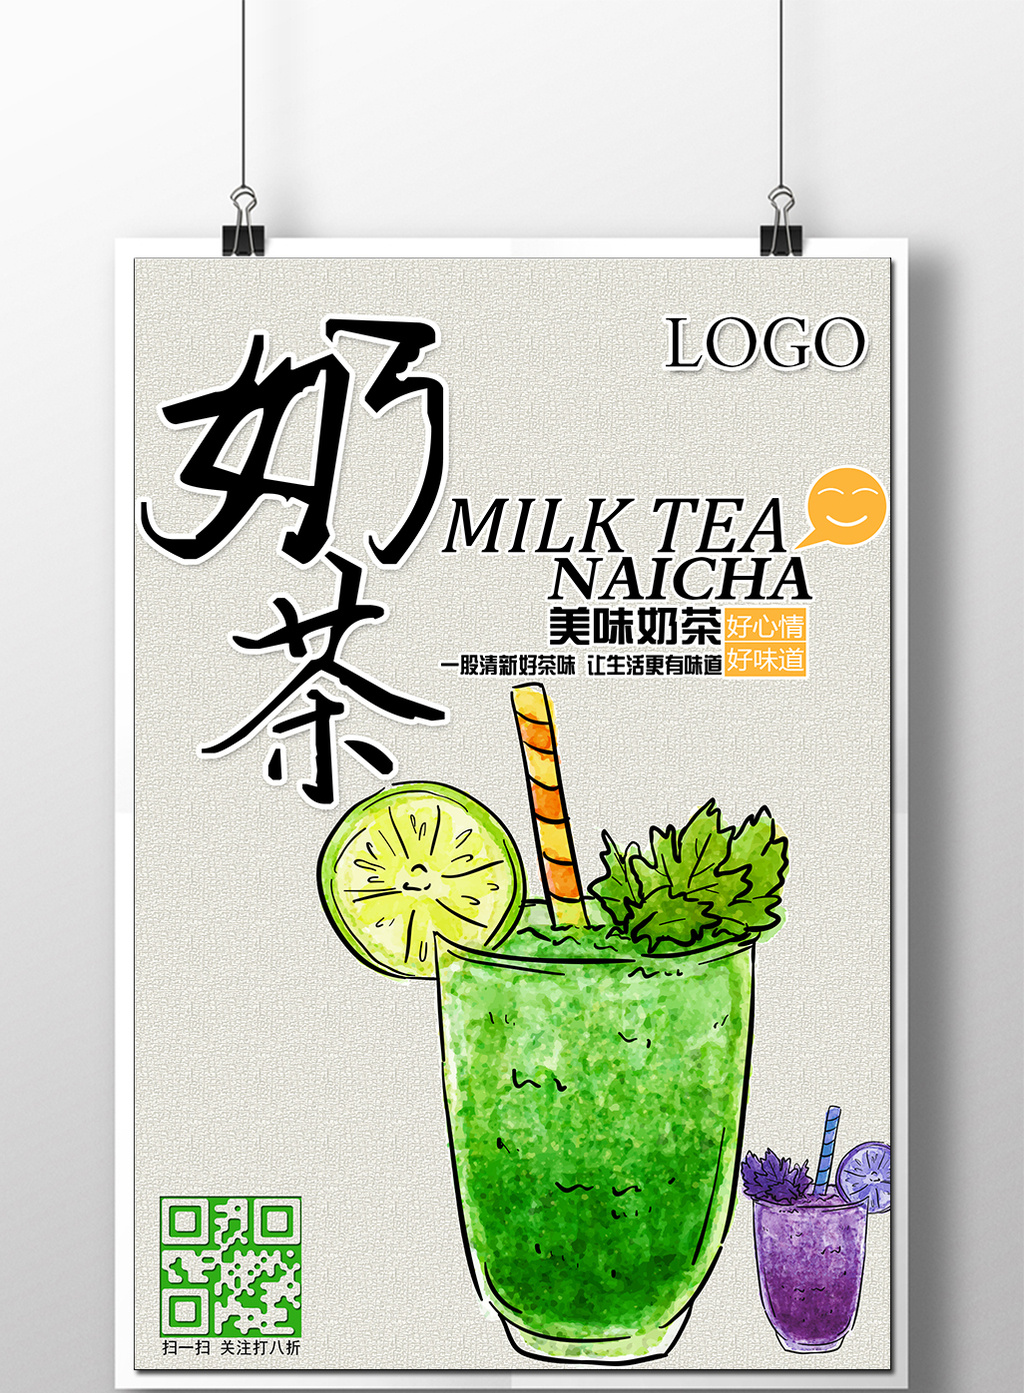 包图 广告设计 海报 > 奶茶 奶茶手绘 奶茶宣传海报广告  上传时间